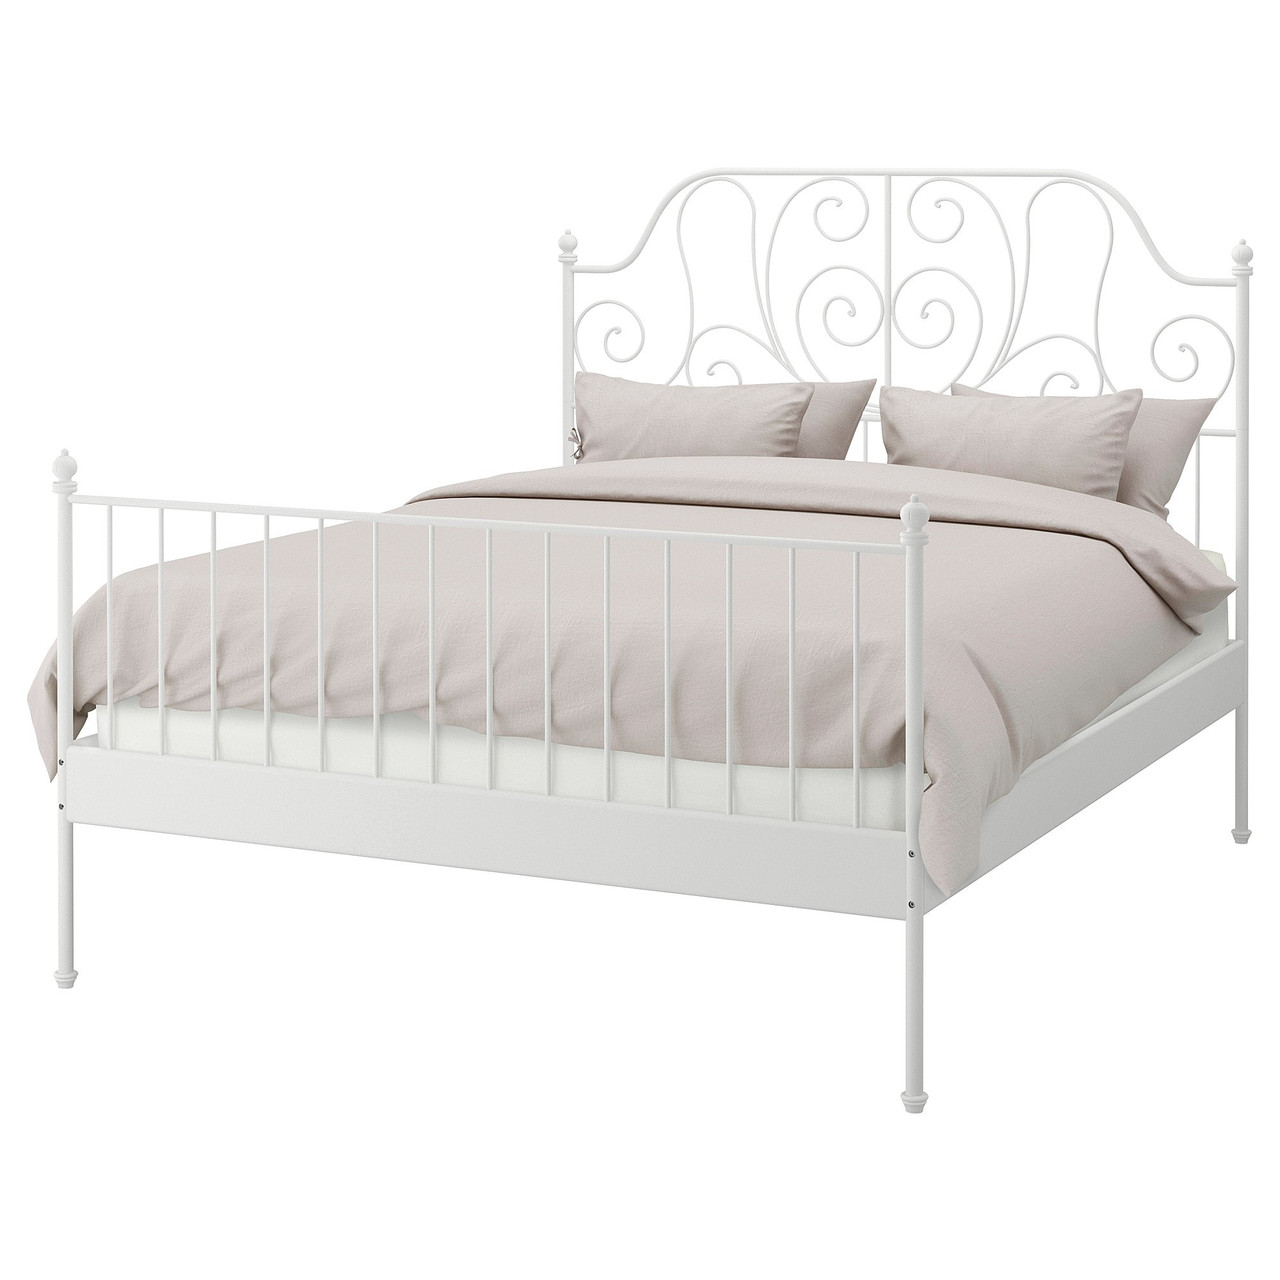 Кровать ЛЕЙРВИК белый/Лонсет 140x200 см ИКЕА, IKEA